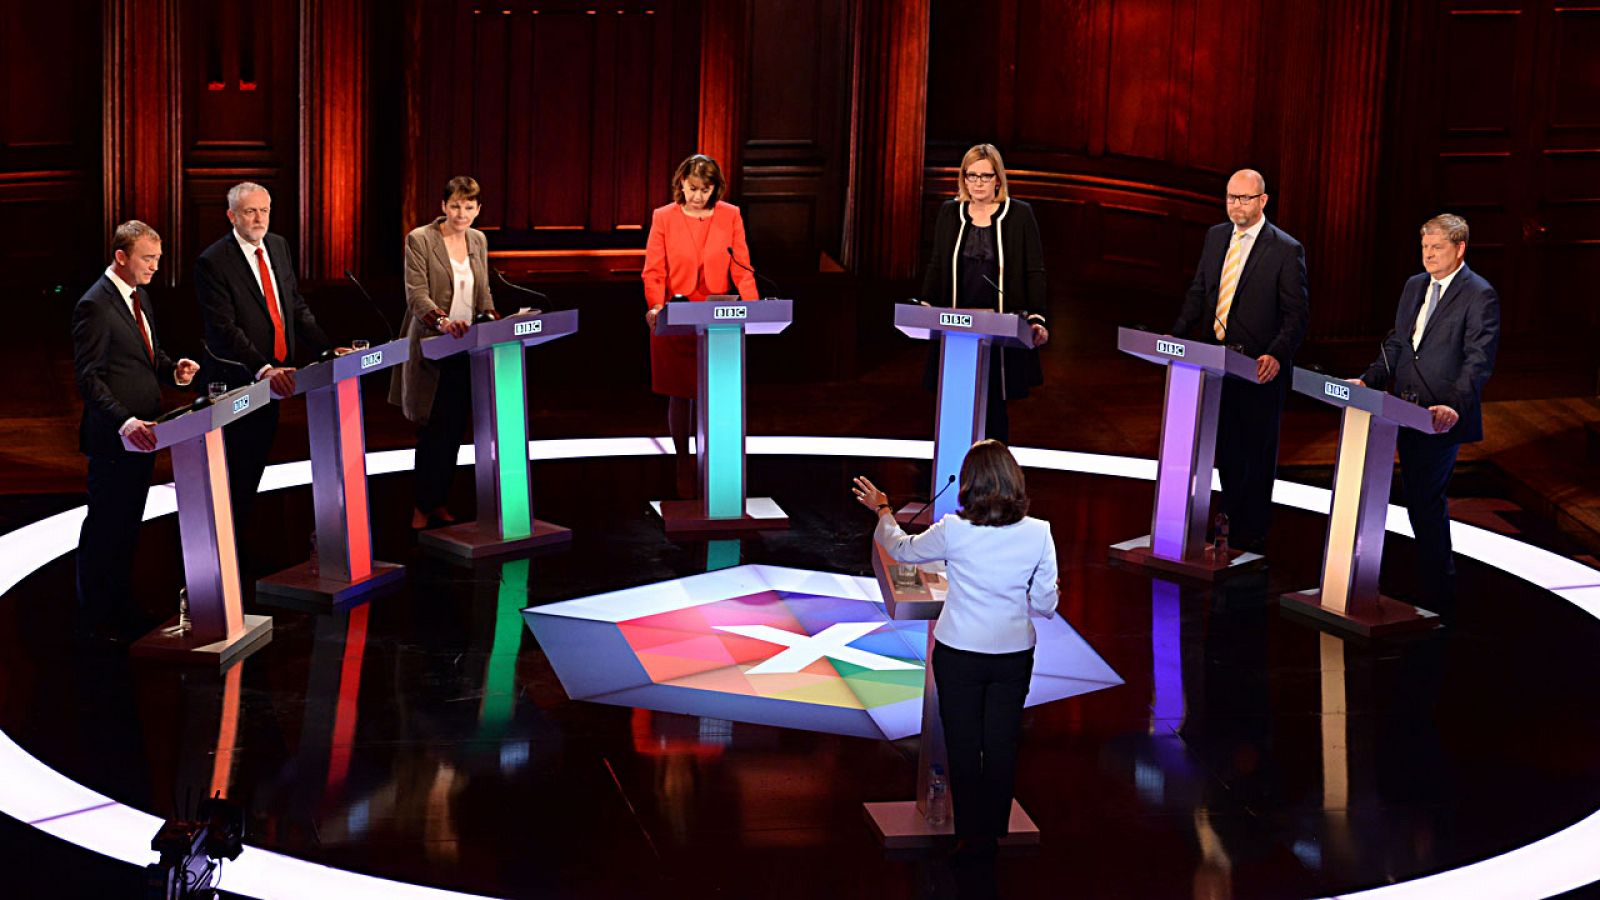 El debate electoral de la BBC, al que no ha asistido Theresa May